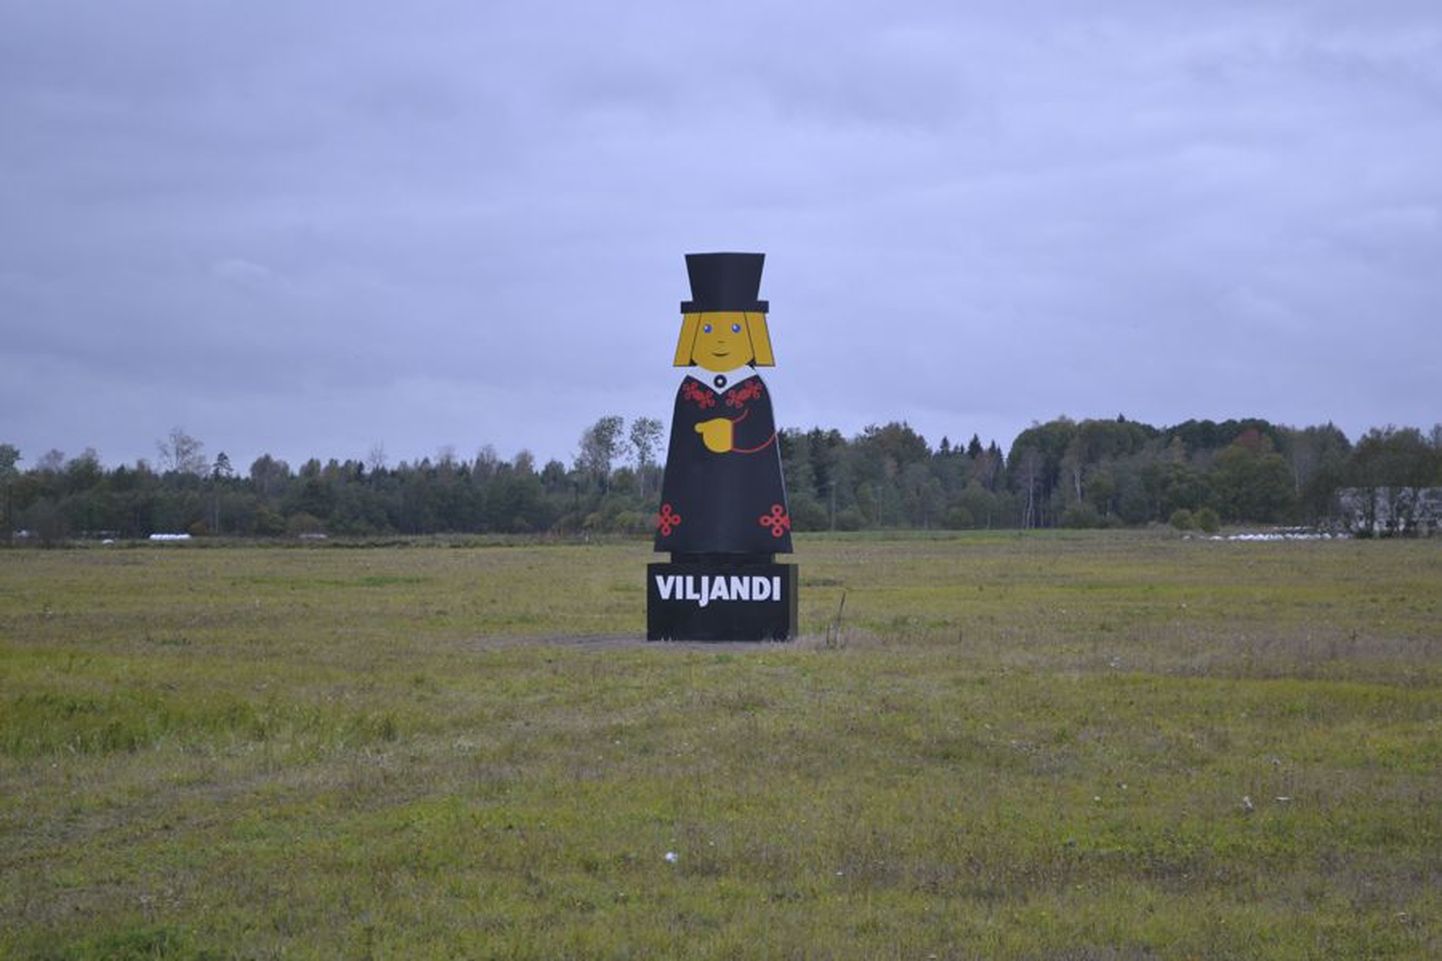 Kuuemeetrise Mulgi mehe eesmärk on Eesti tihedaima liiklusega maanteel sõitjatele Viljandi olemasolu meelde tuletada.